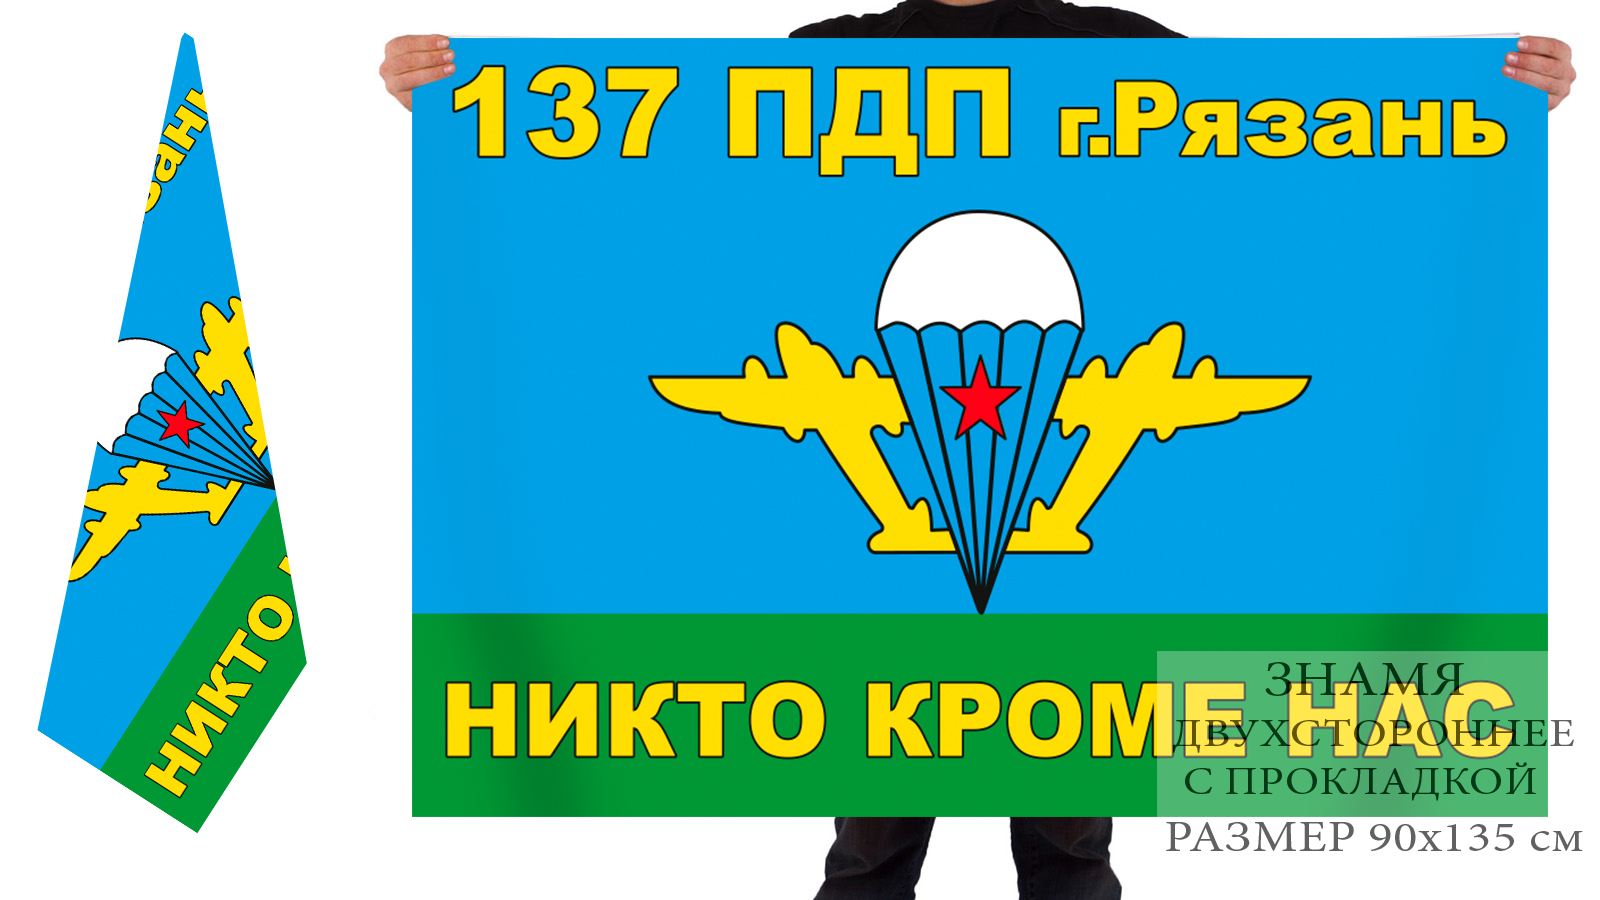 137 Гв парашютно-десантный полк